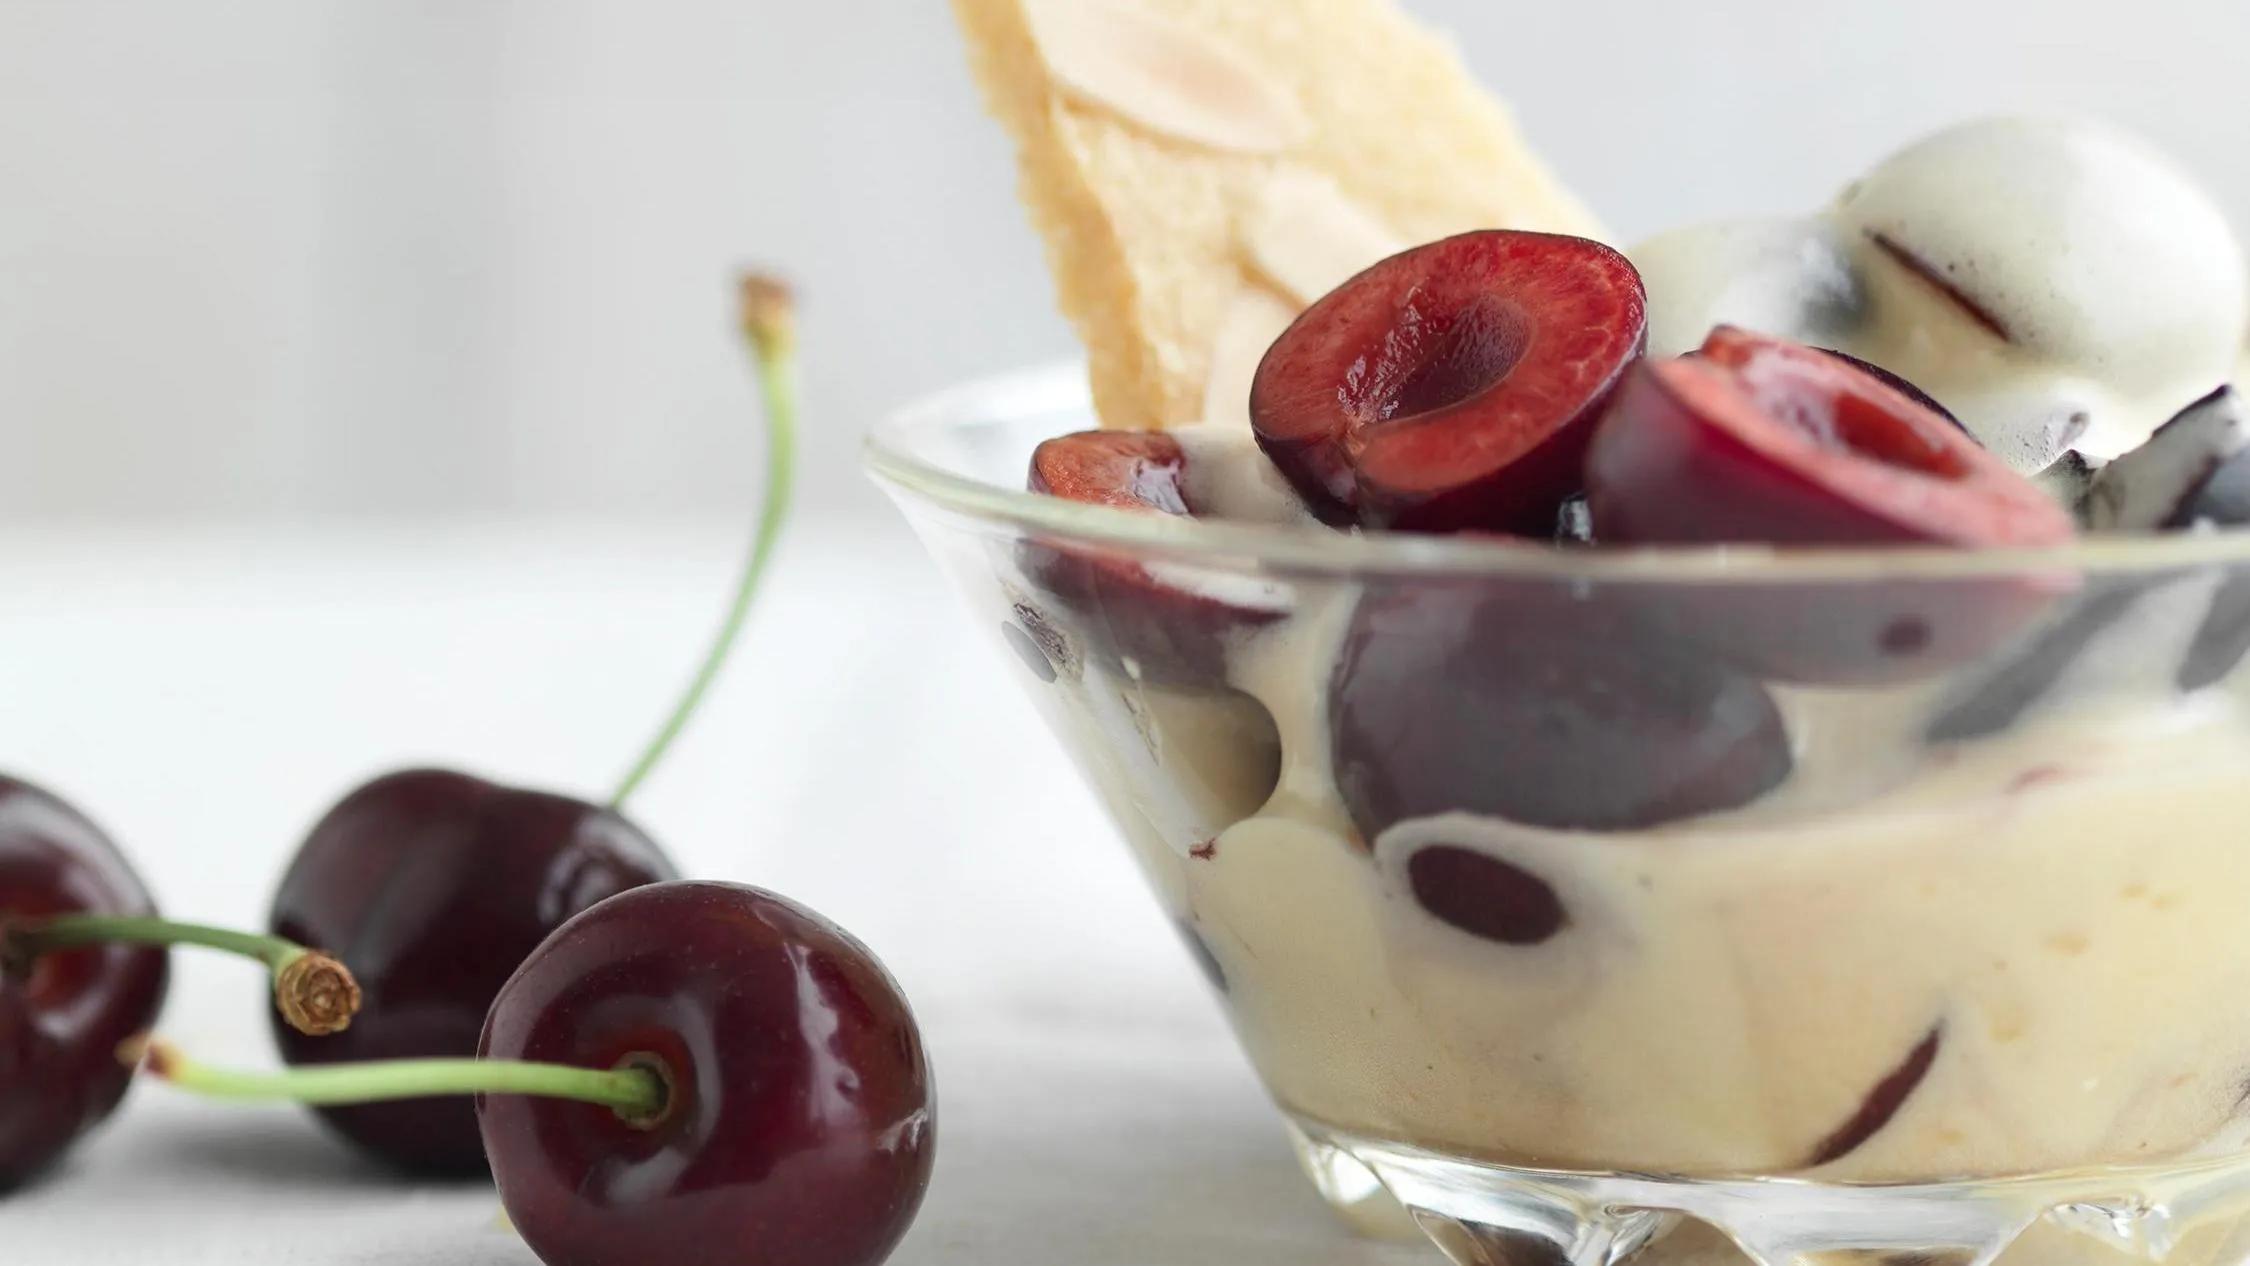 Warm Amaretto zabaglione, cherries and shortbread | The Dish | The ...